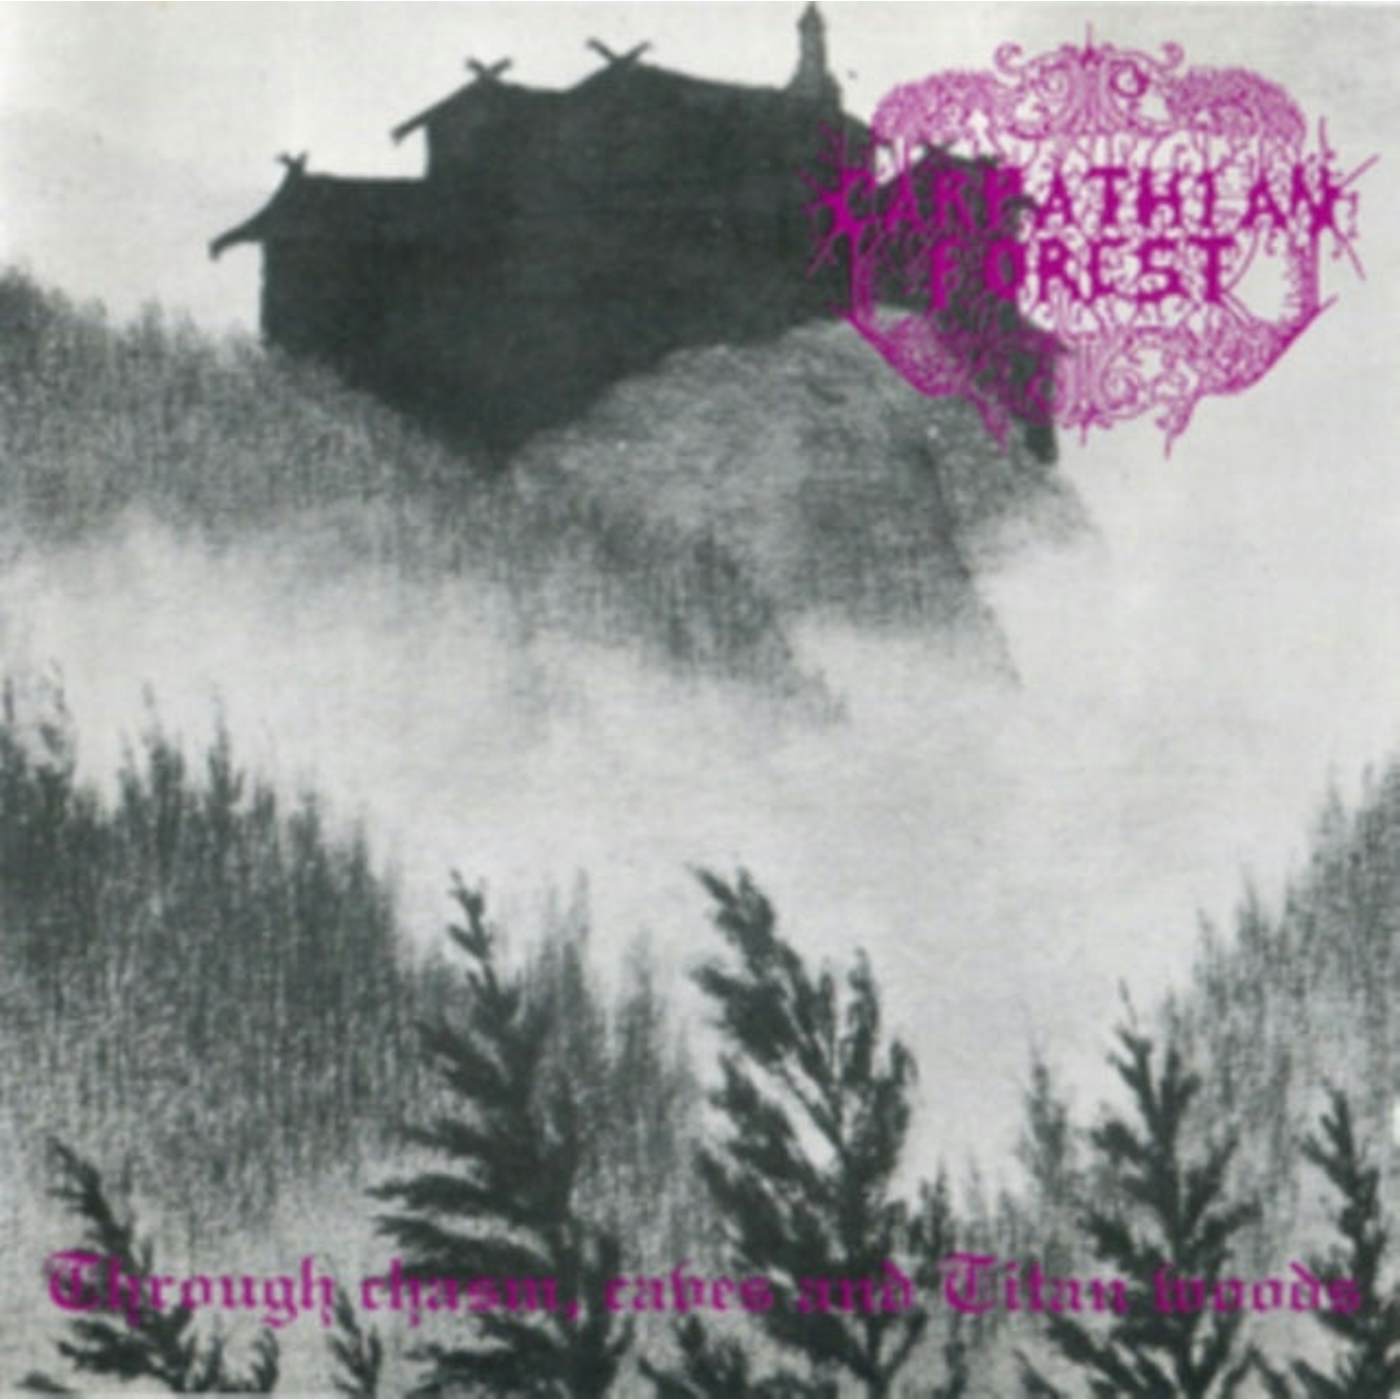 Carpathian Forest LP - Chasm Caves & Titan Woods (Vinyl)